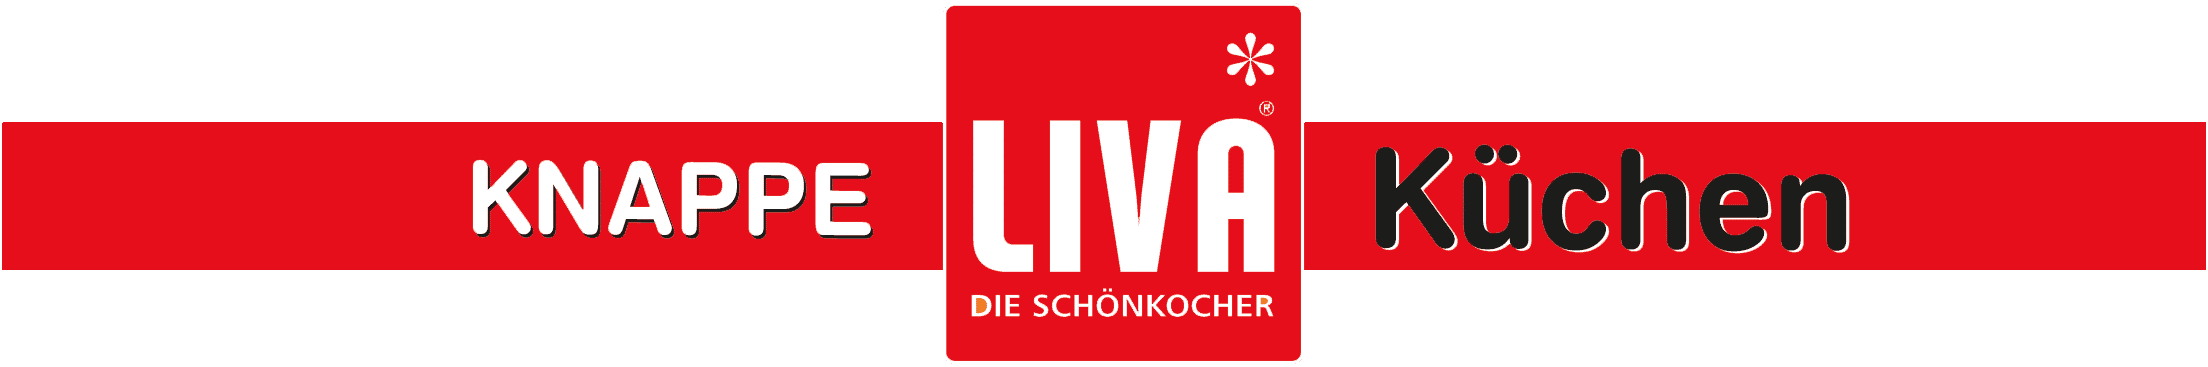 Knappe Liva Kuechen